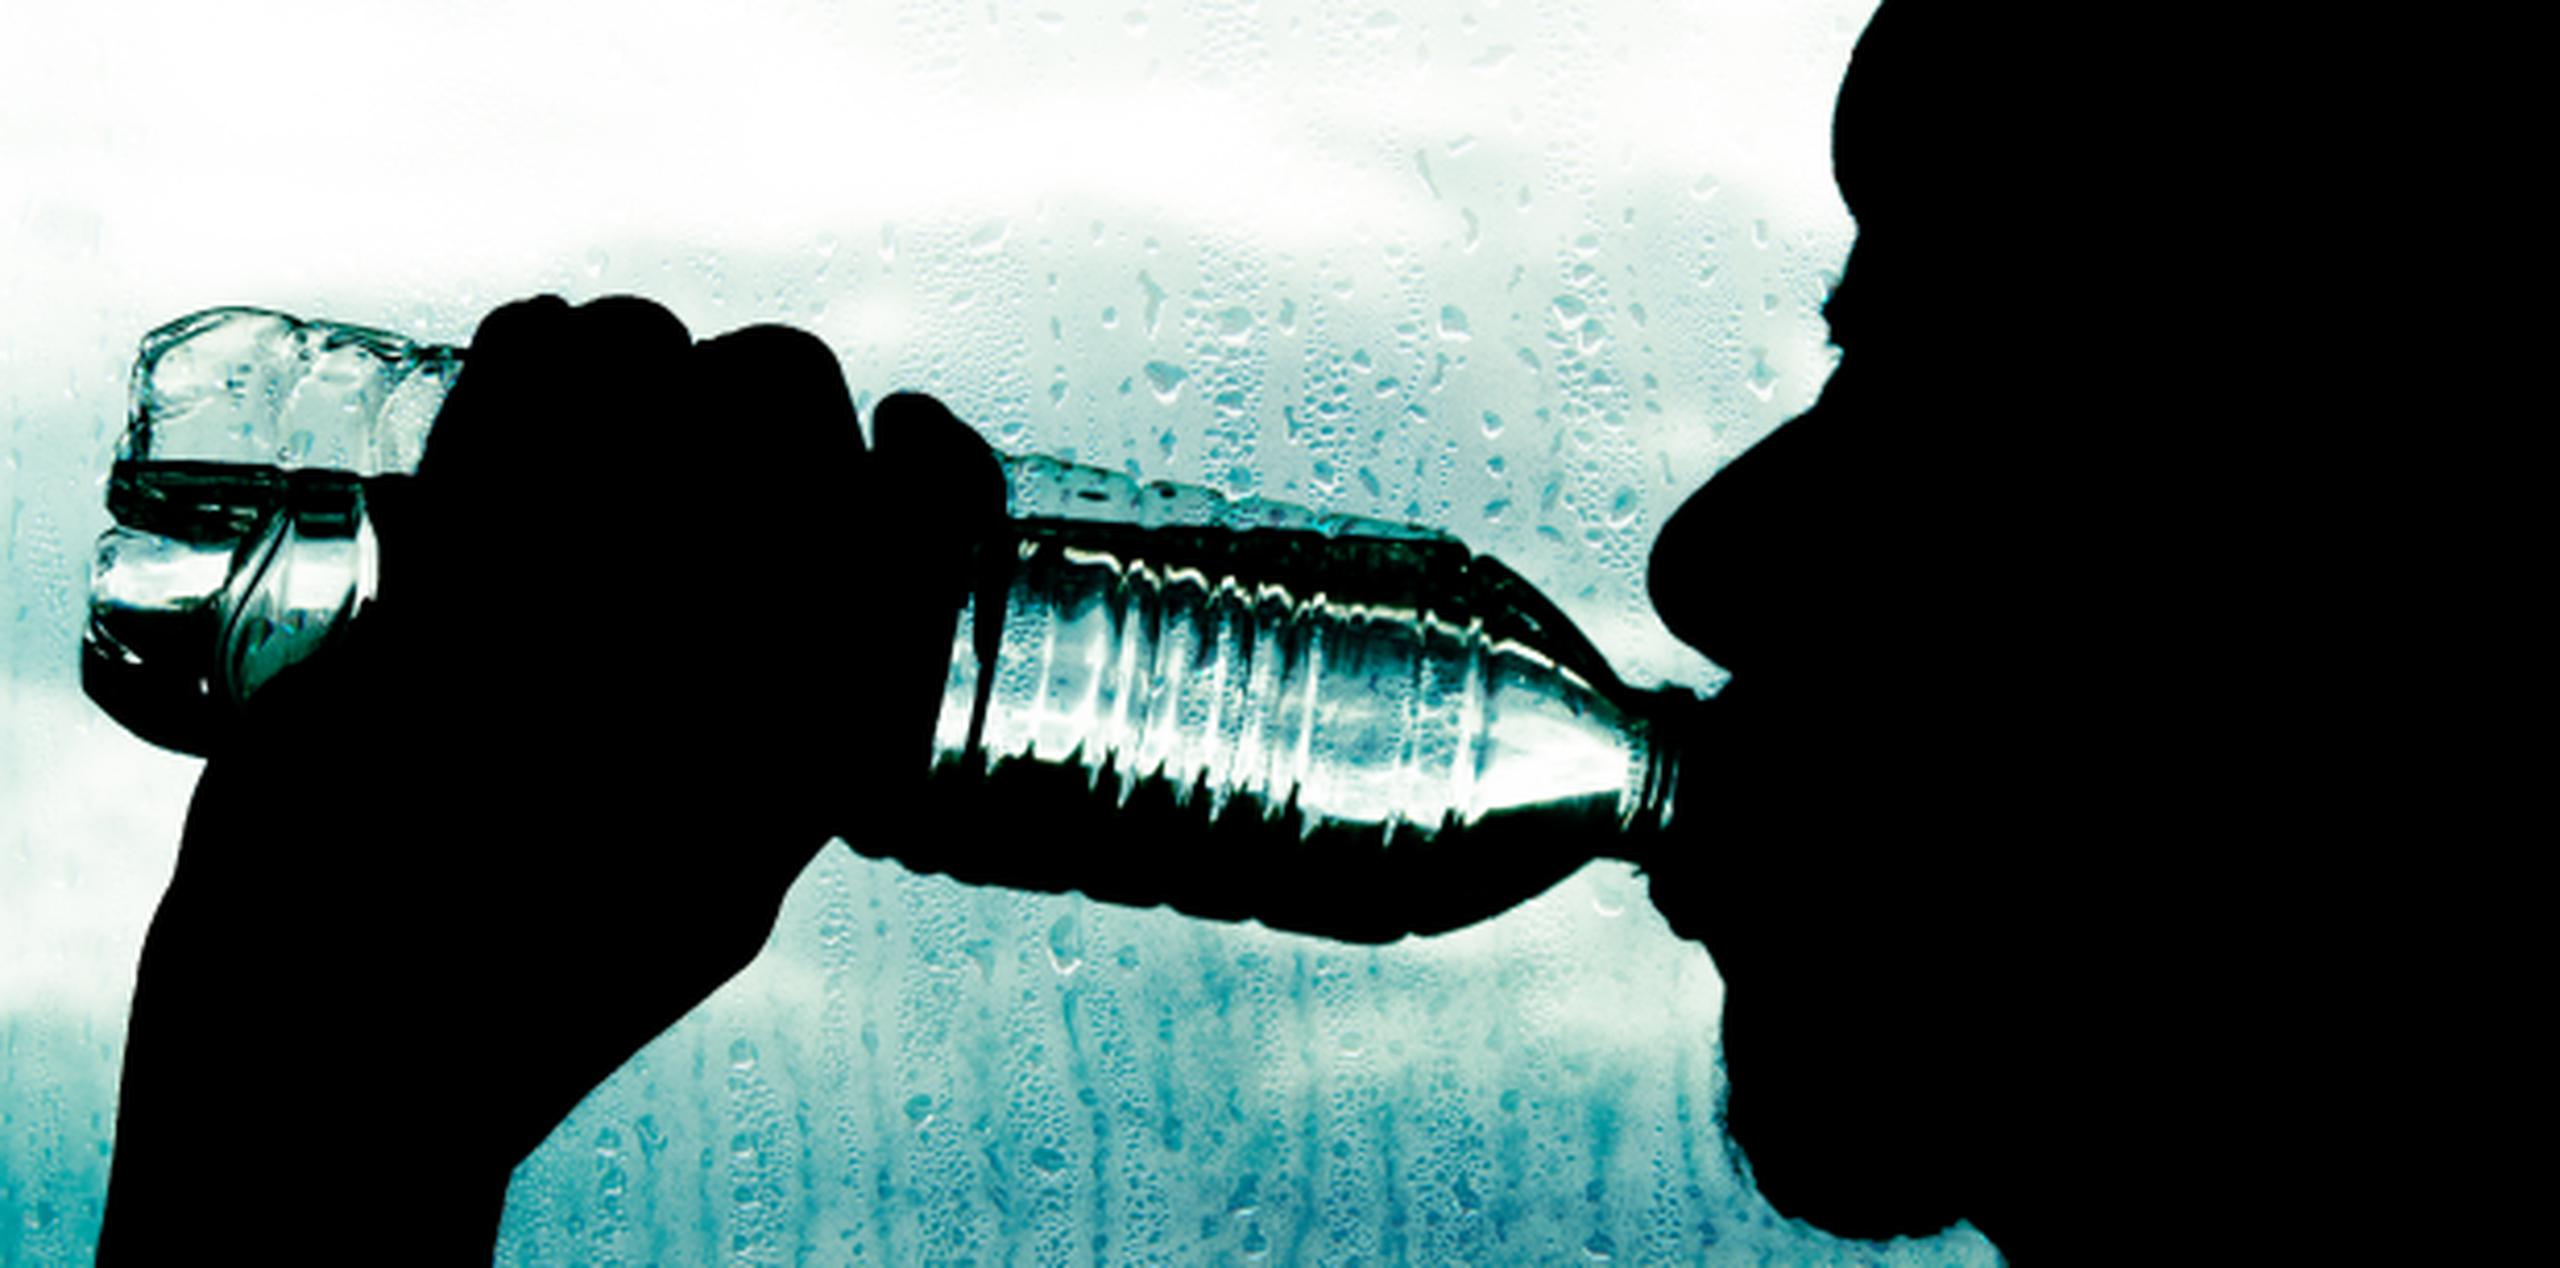 La recomendación general es consumir entre 6 y 8 vasos de 200 ml de líquido al día. (Shutterstock)